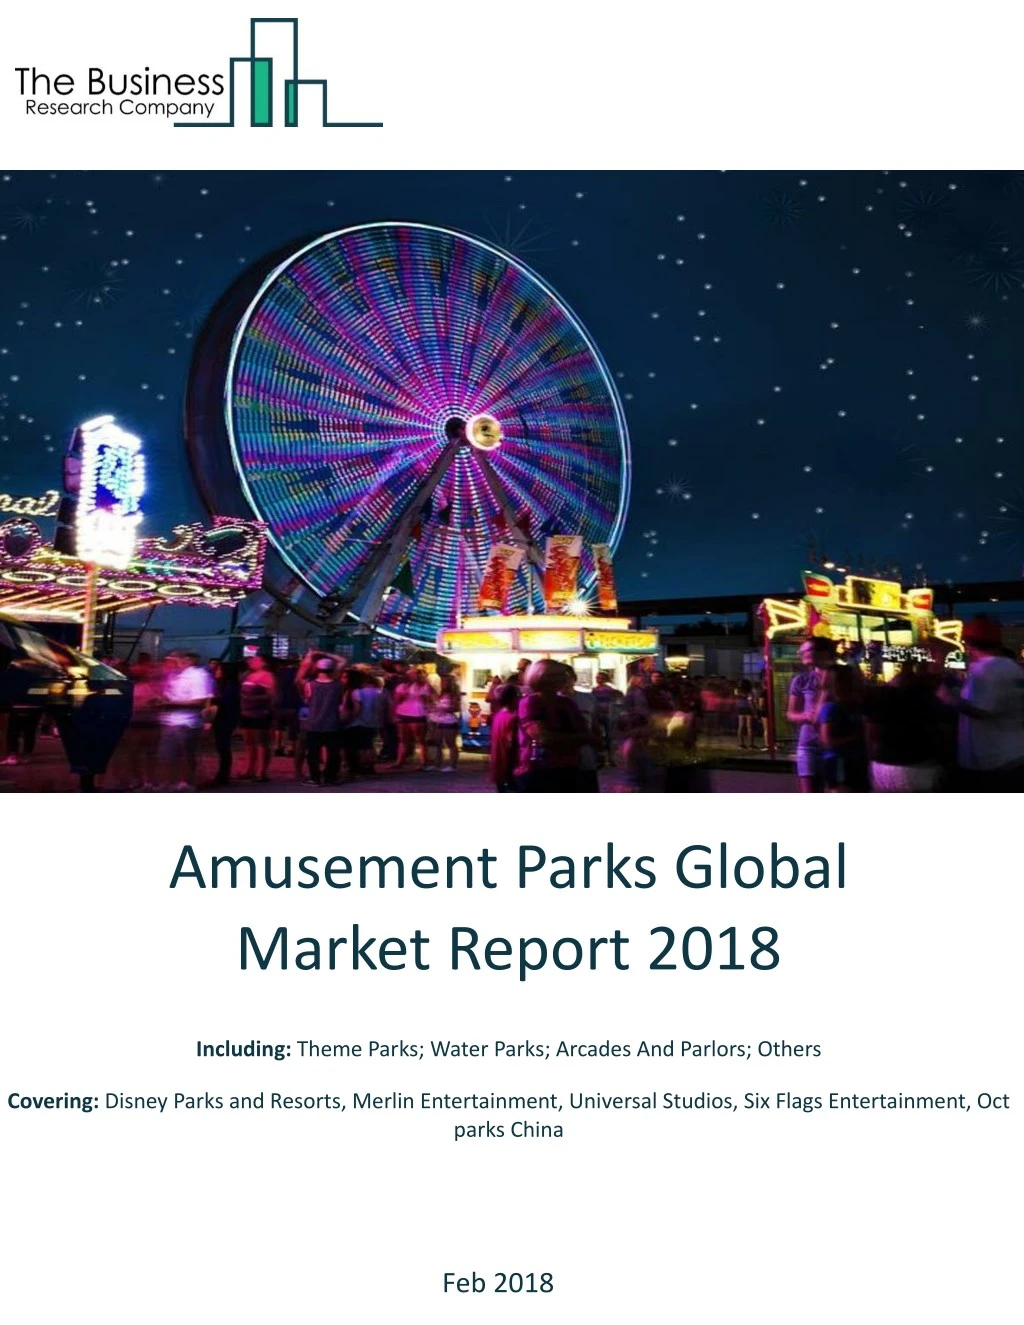 amusement parks global market report 2018